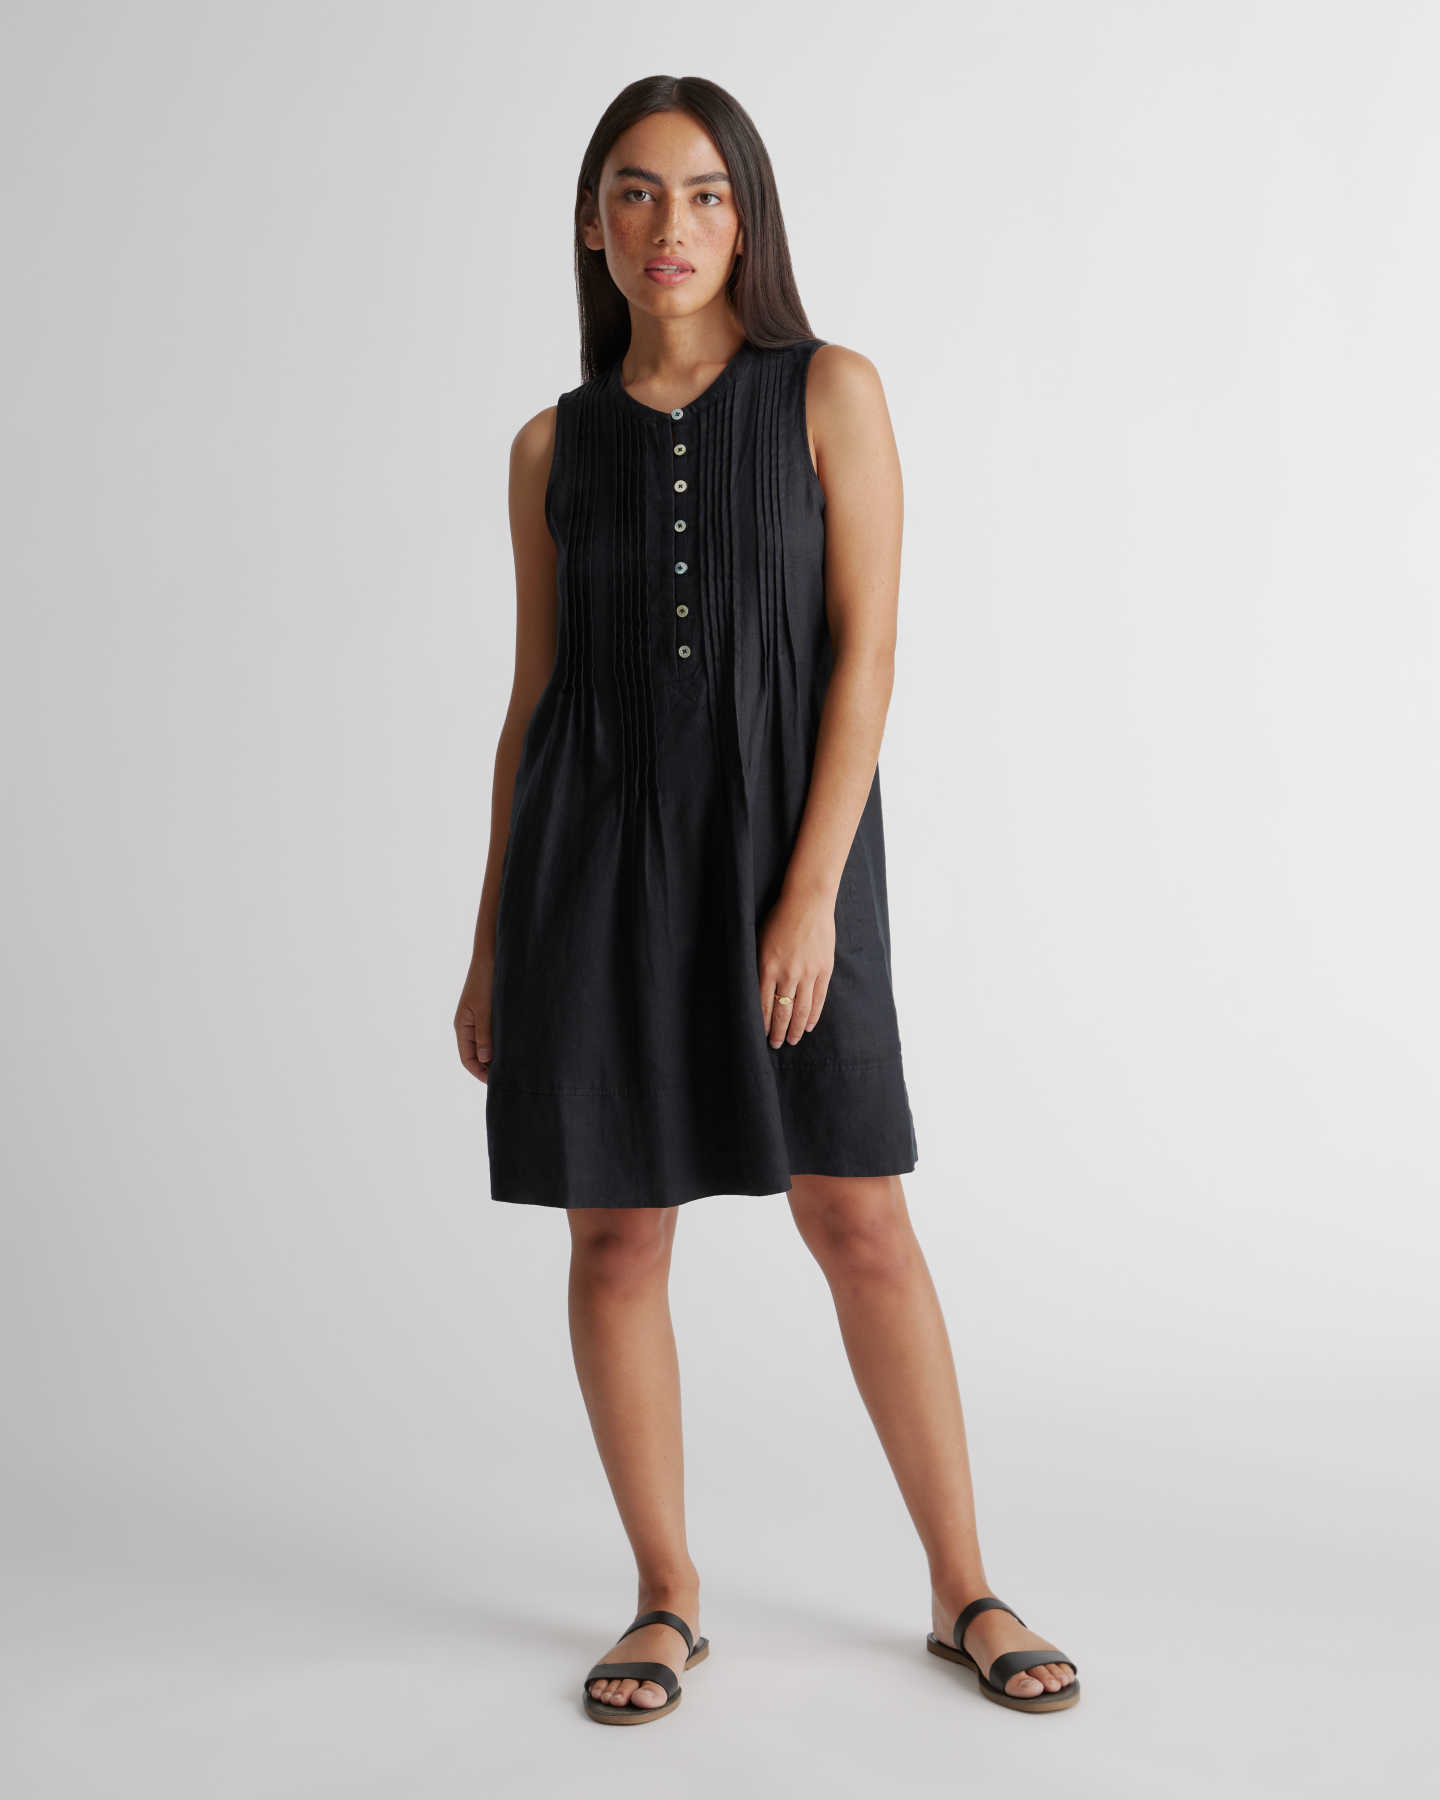 100% European Linen Sleeveless Swing Dress - Black - 0